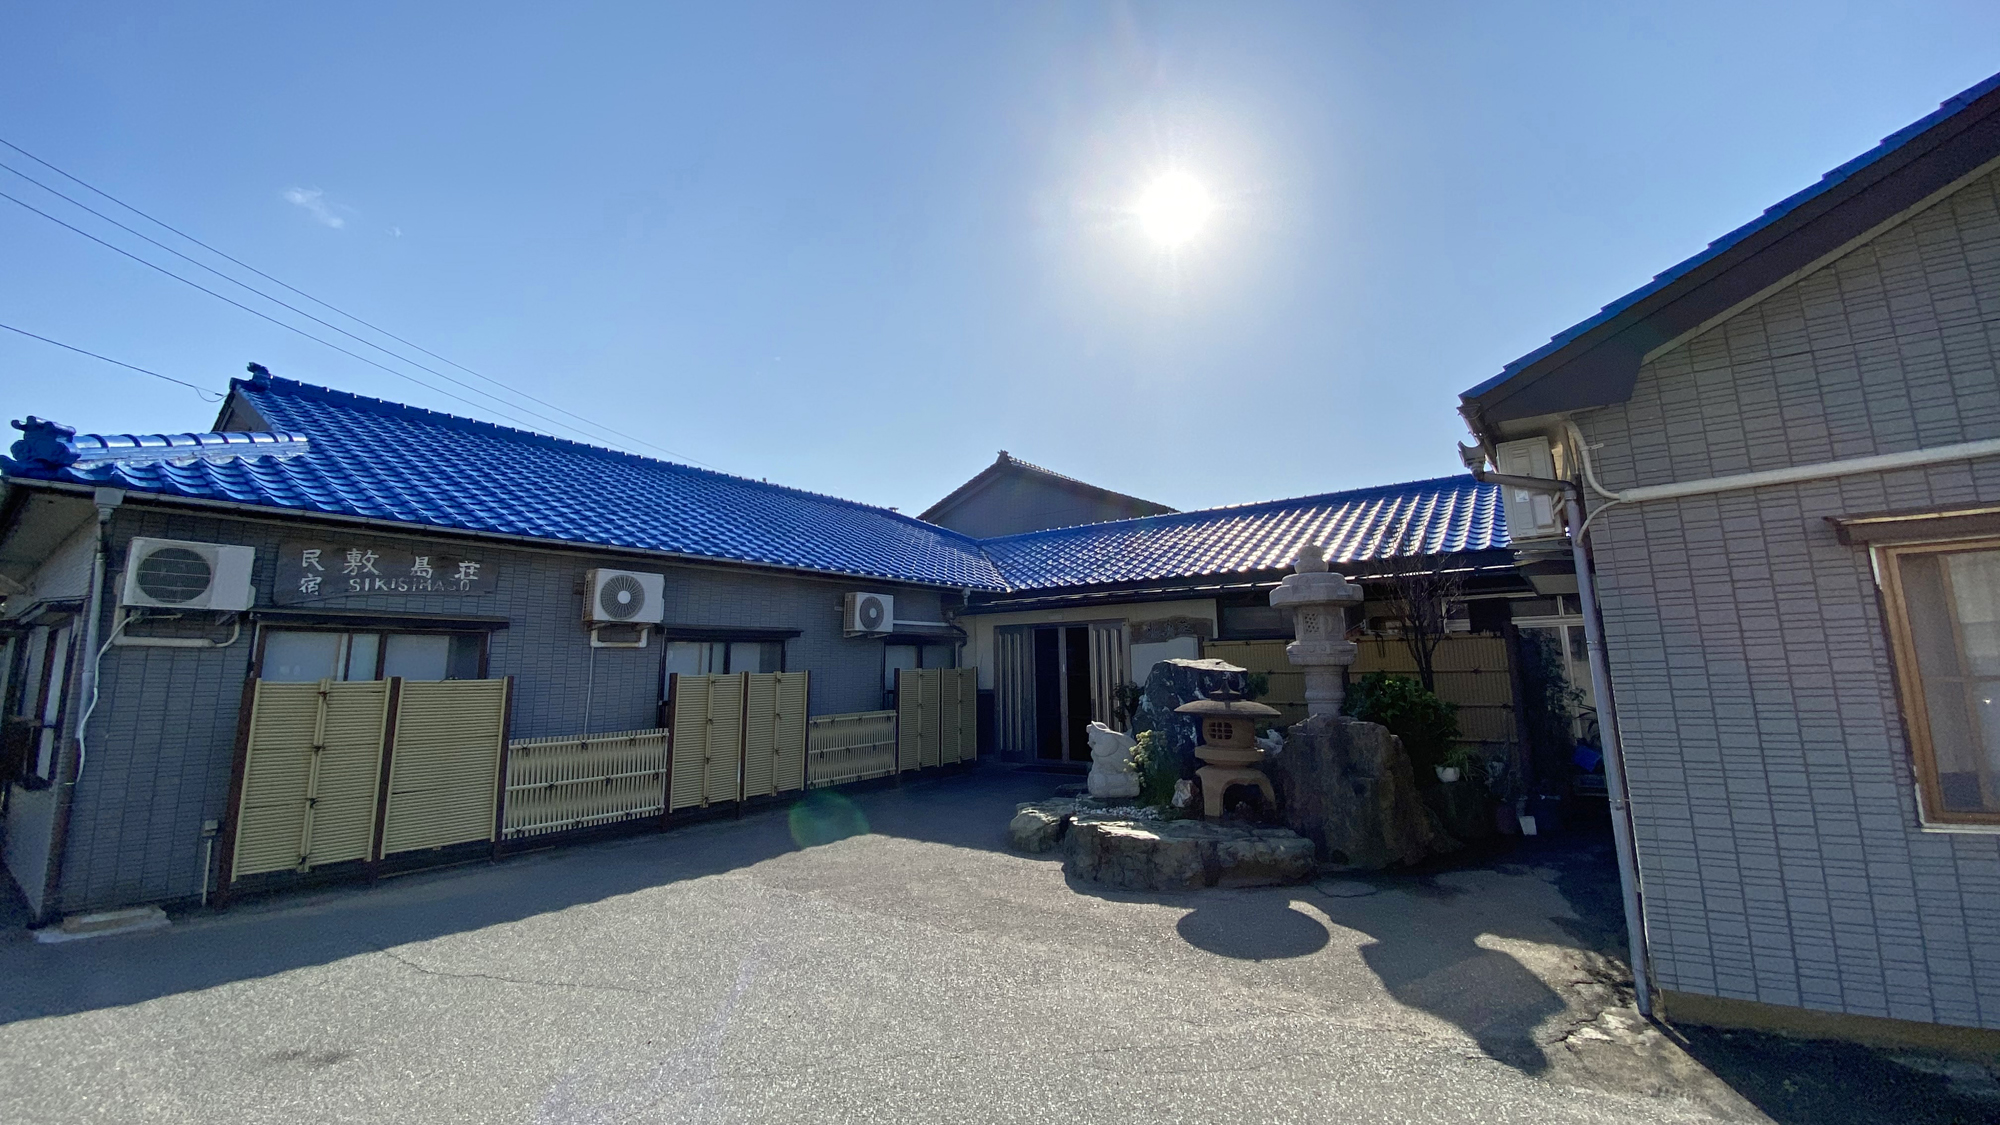 佐渡島で料理の美味しい宿を教えてください。高級旅館は除いて